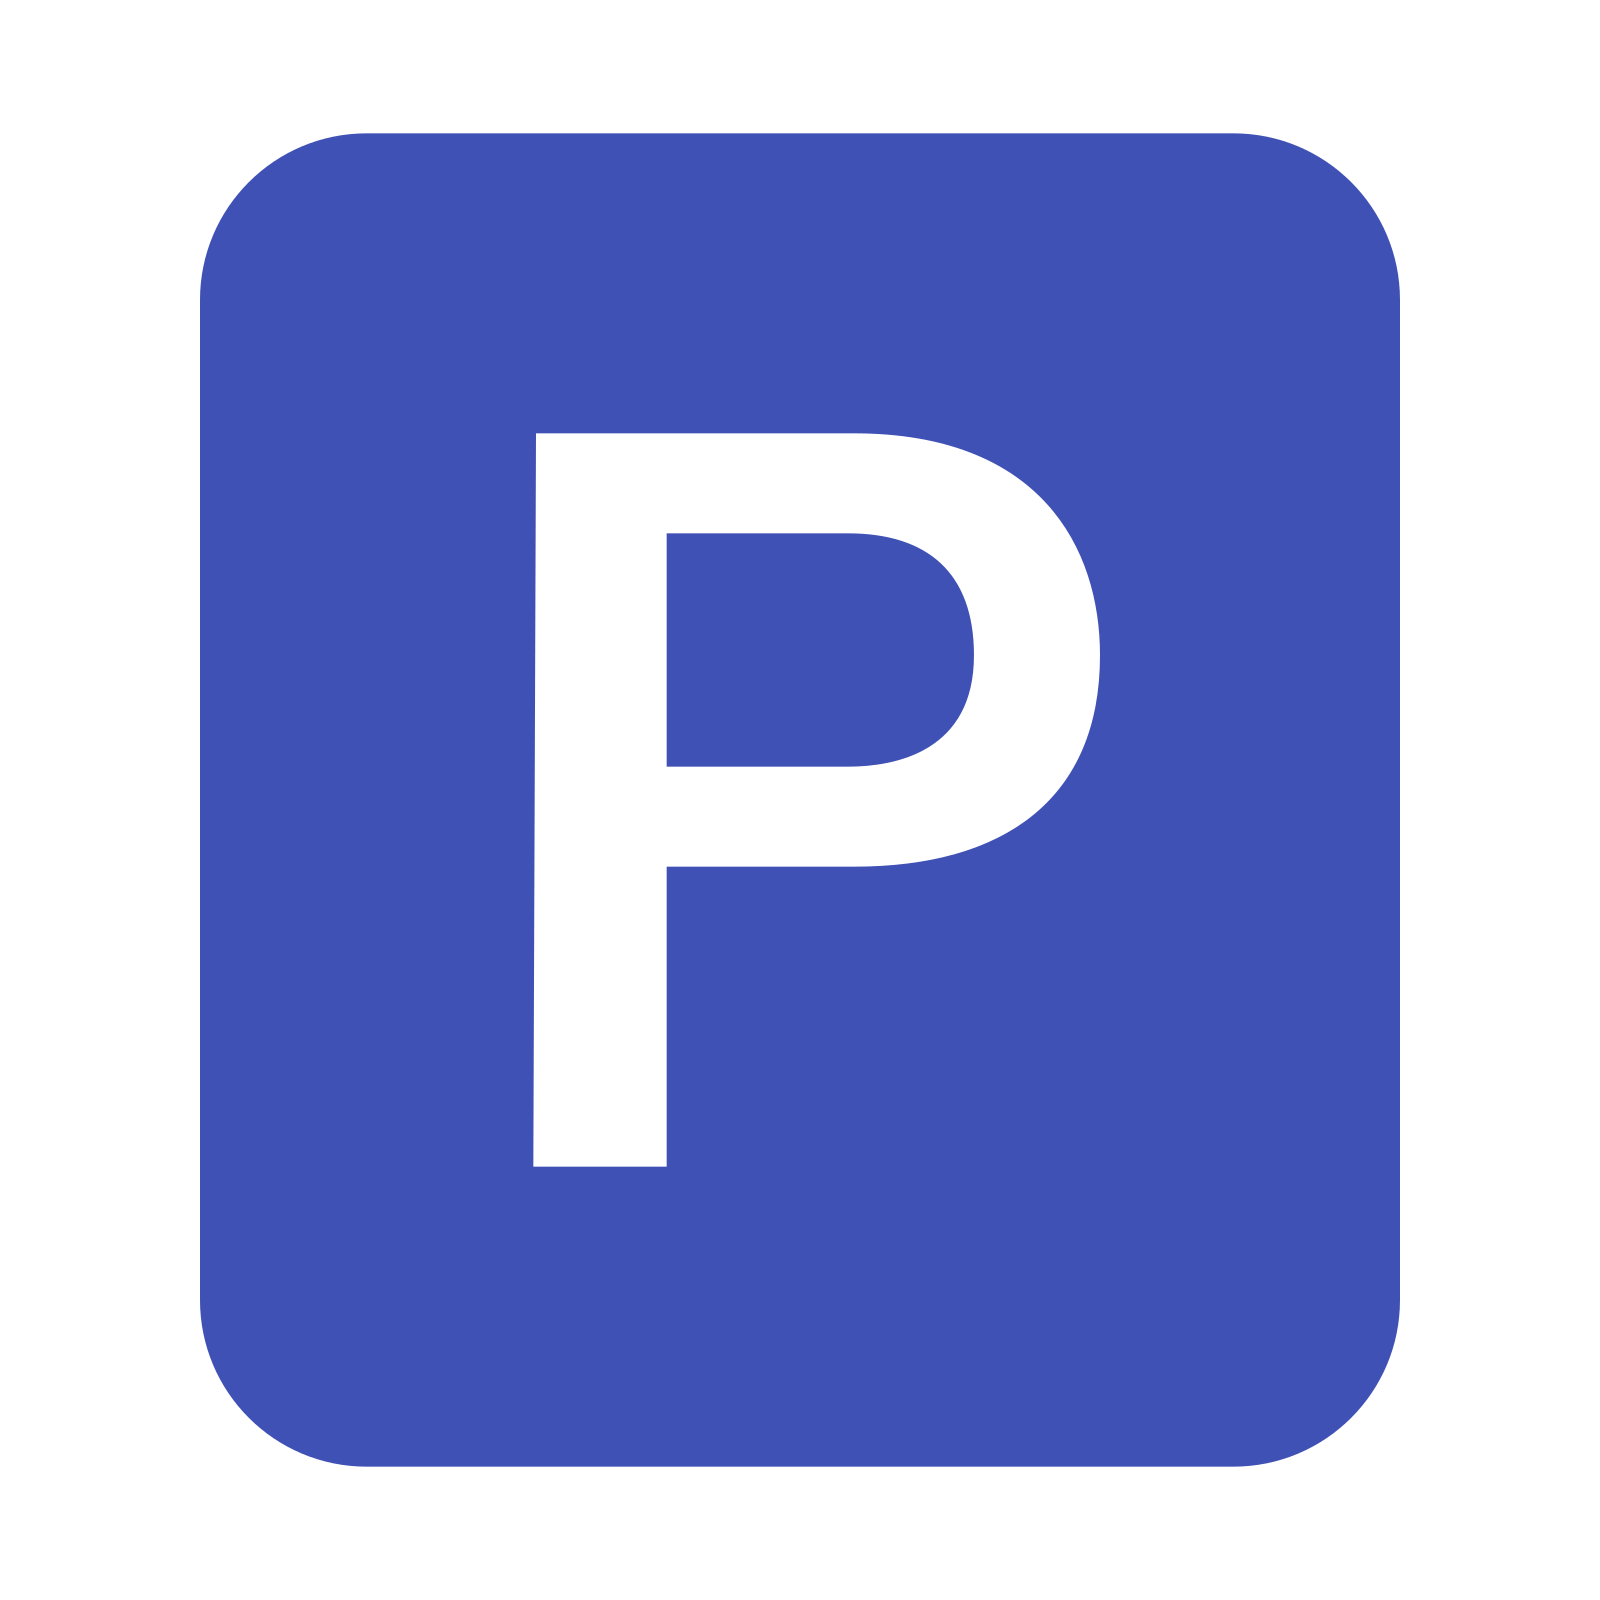 Parking PNG Photo Clip Art Image